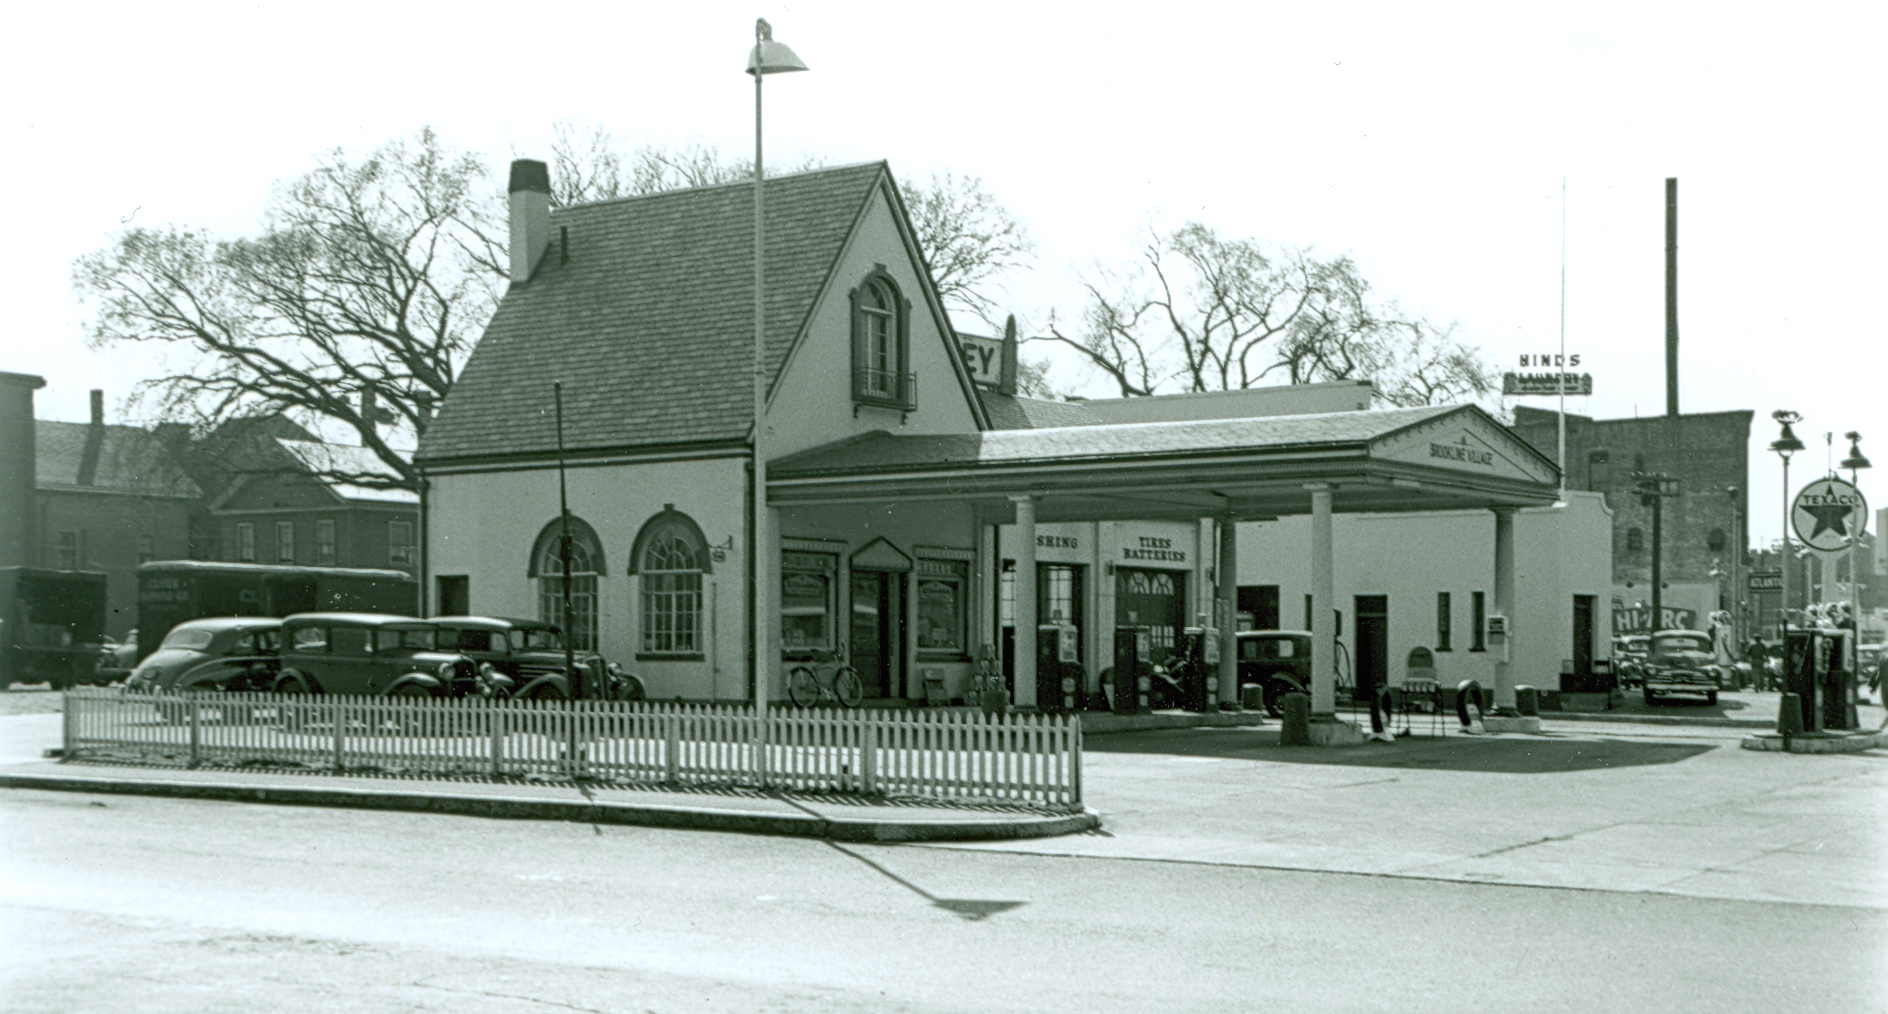 Jenny Service Station, Brookline Village